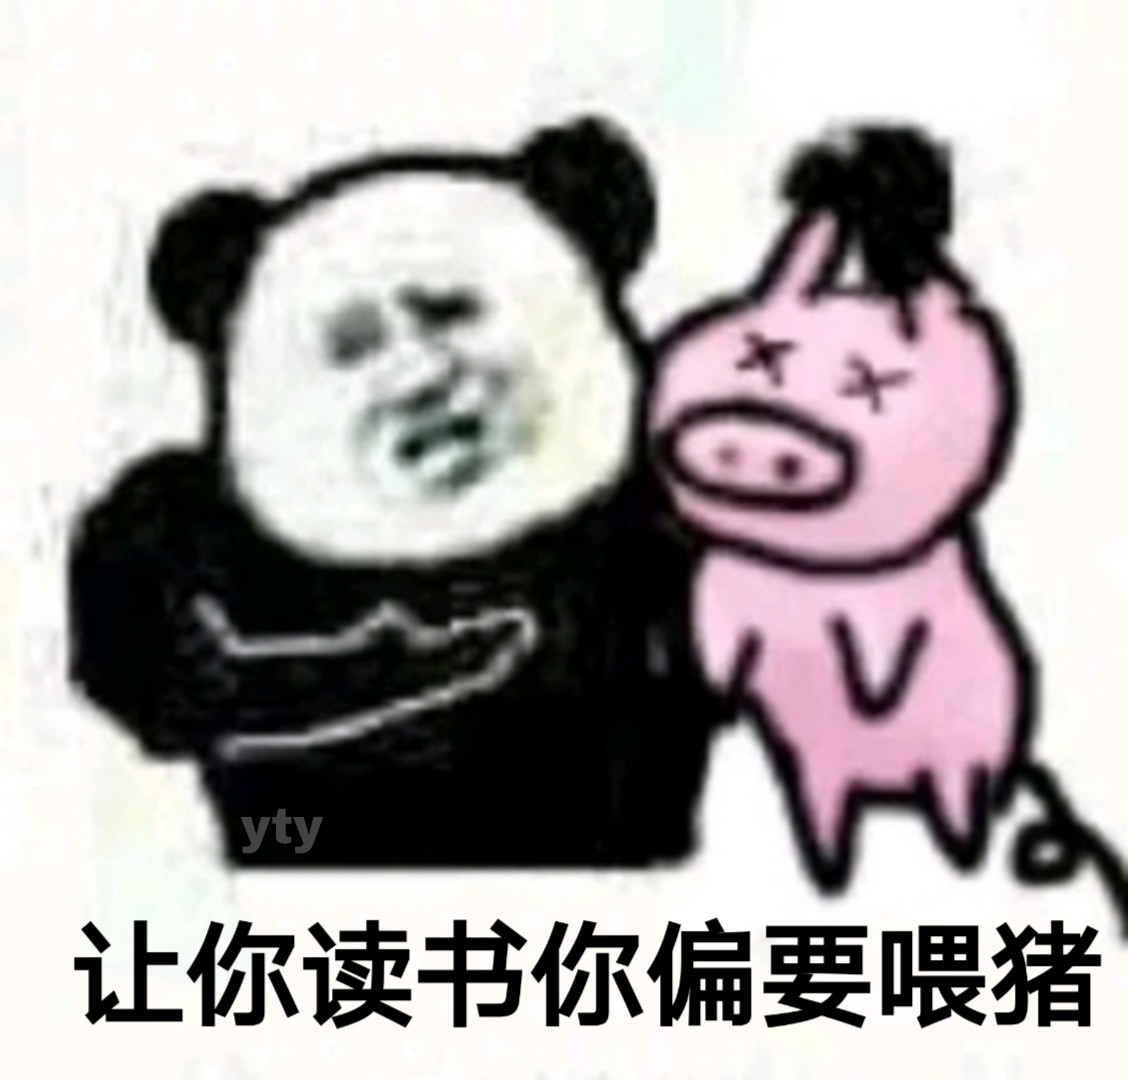 熊猫头社会社会斗图抱拳搞笑gif动图_动态图_表情包下载_SOOGIF